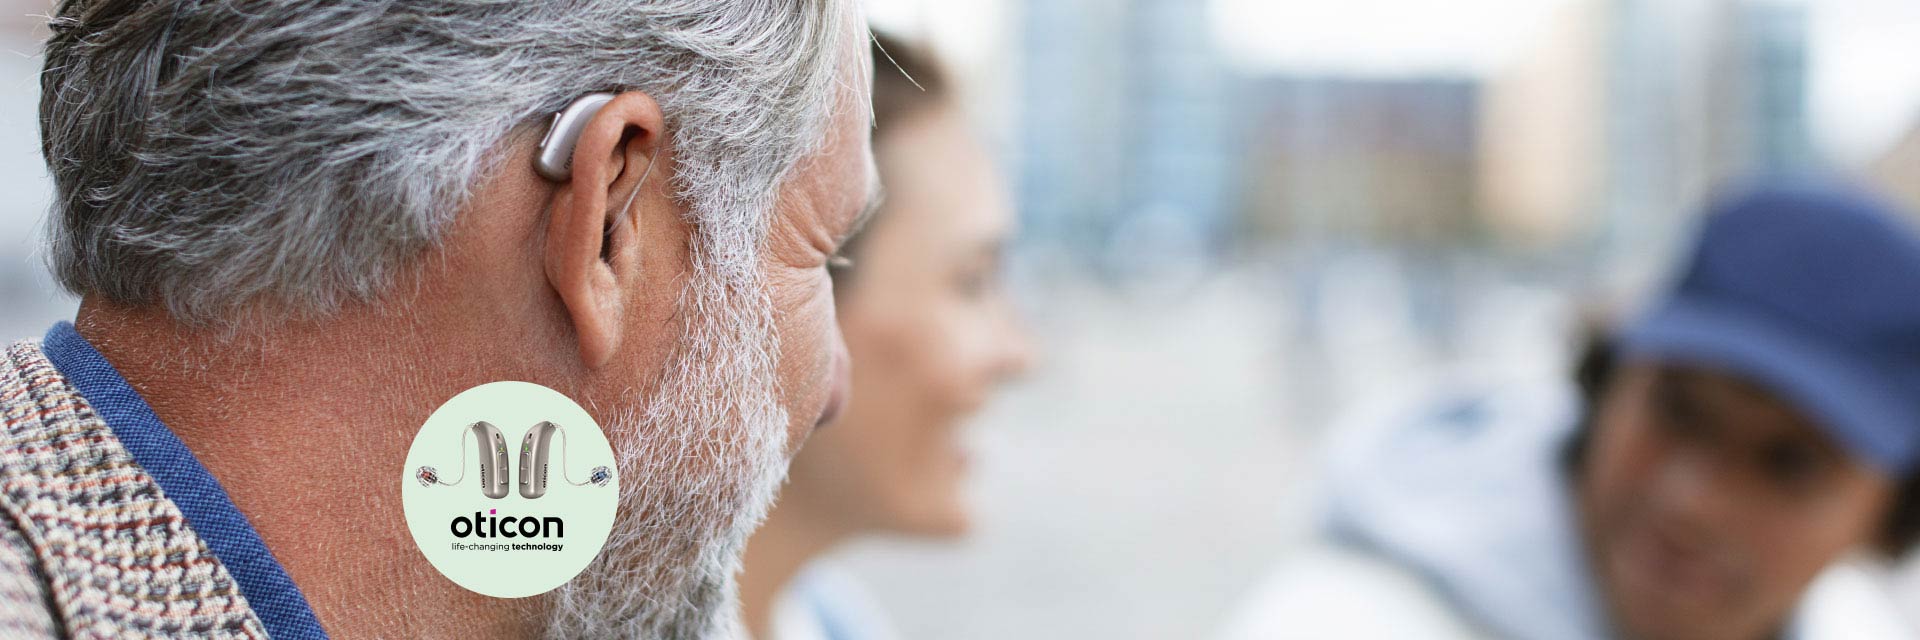 Afbeelding van man met gehoorapparaat achter zijn oor